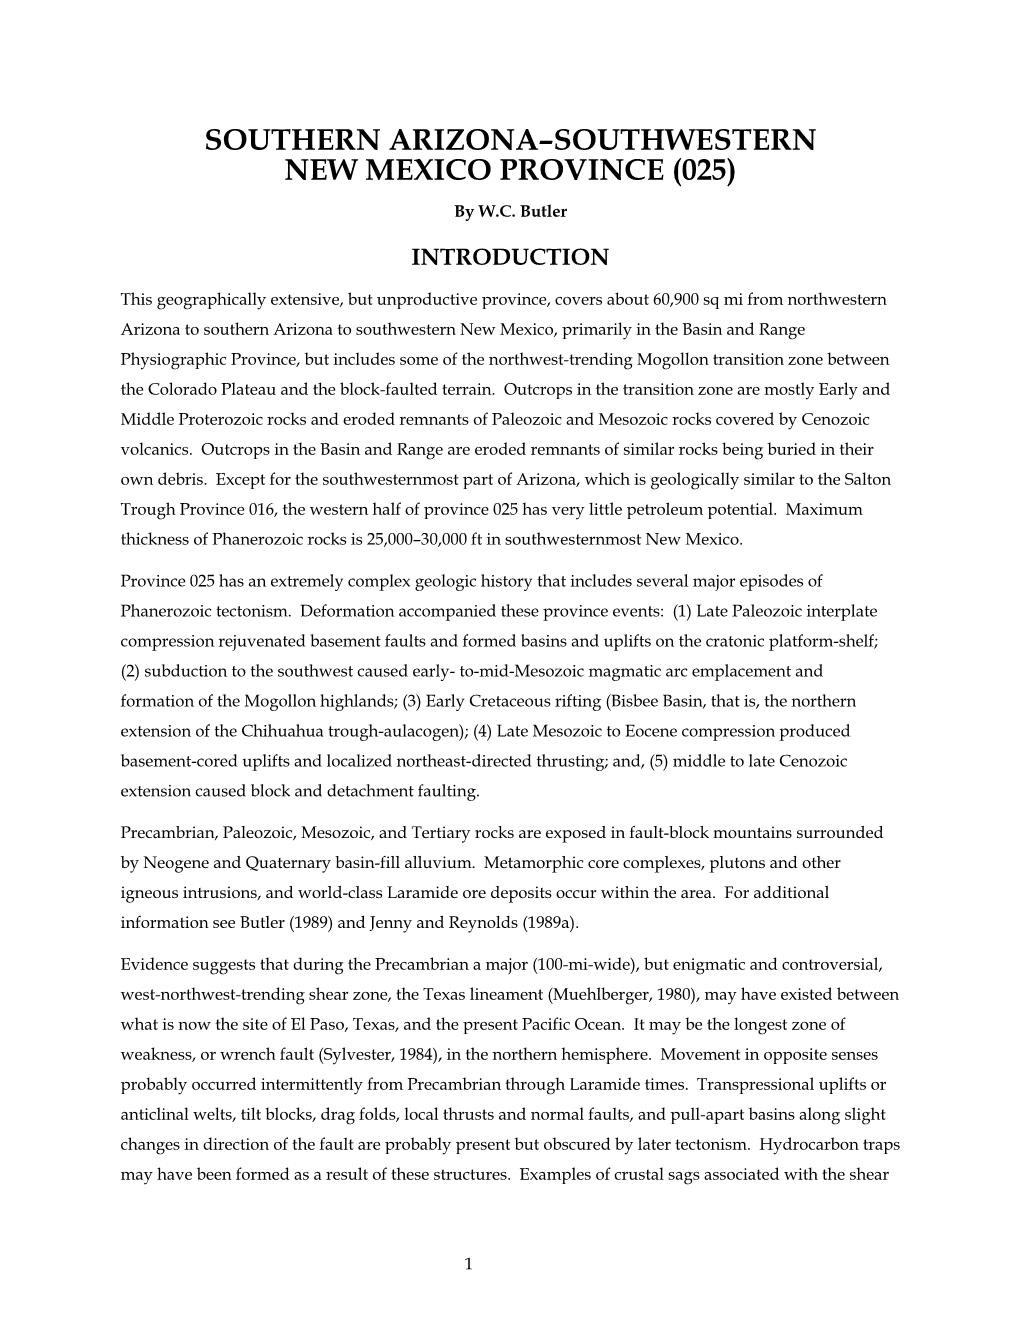 SOUTHERN ARIZONA–SOUTHWESTERN NEW MEXICO PROVINCE (025) by W.C